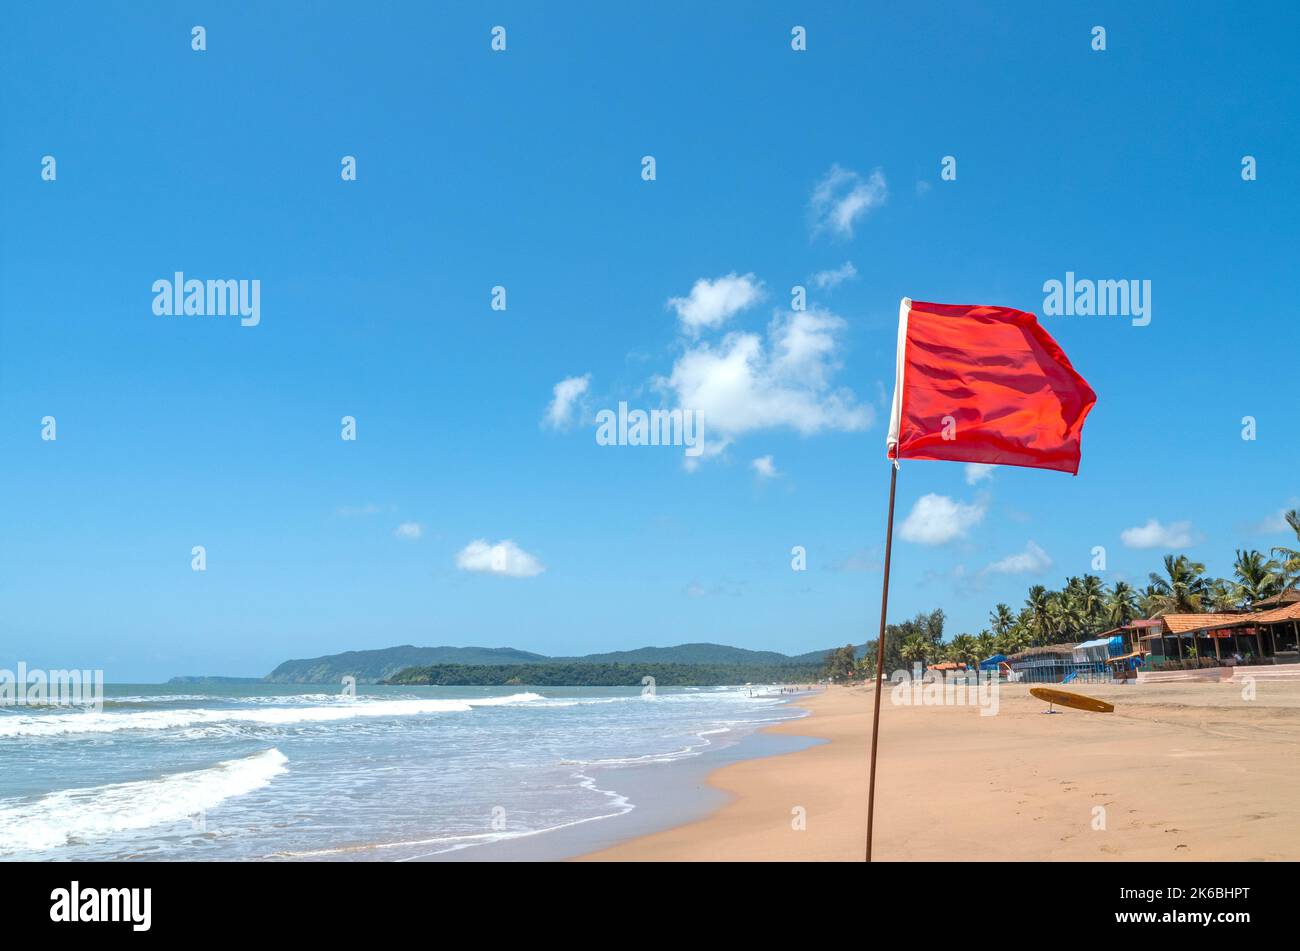 Drapeau rouge comme signe d'avertissement sur la plage avant la tempête signifie pas de natation, pendant la journée ensoleillée venteuse Banque D'Images